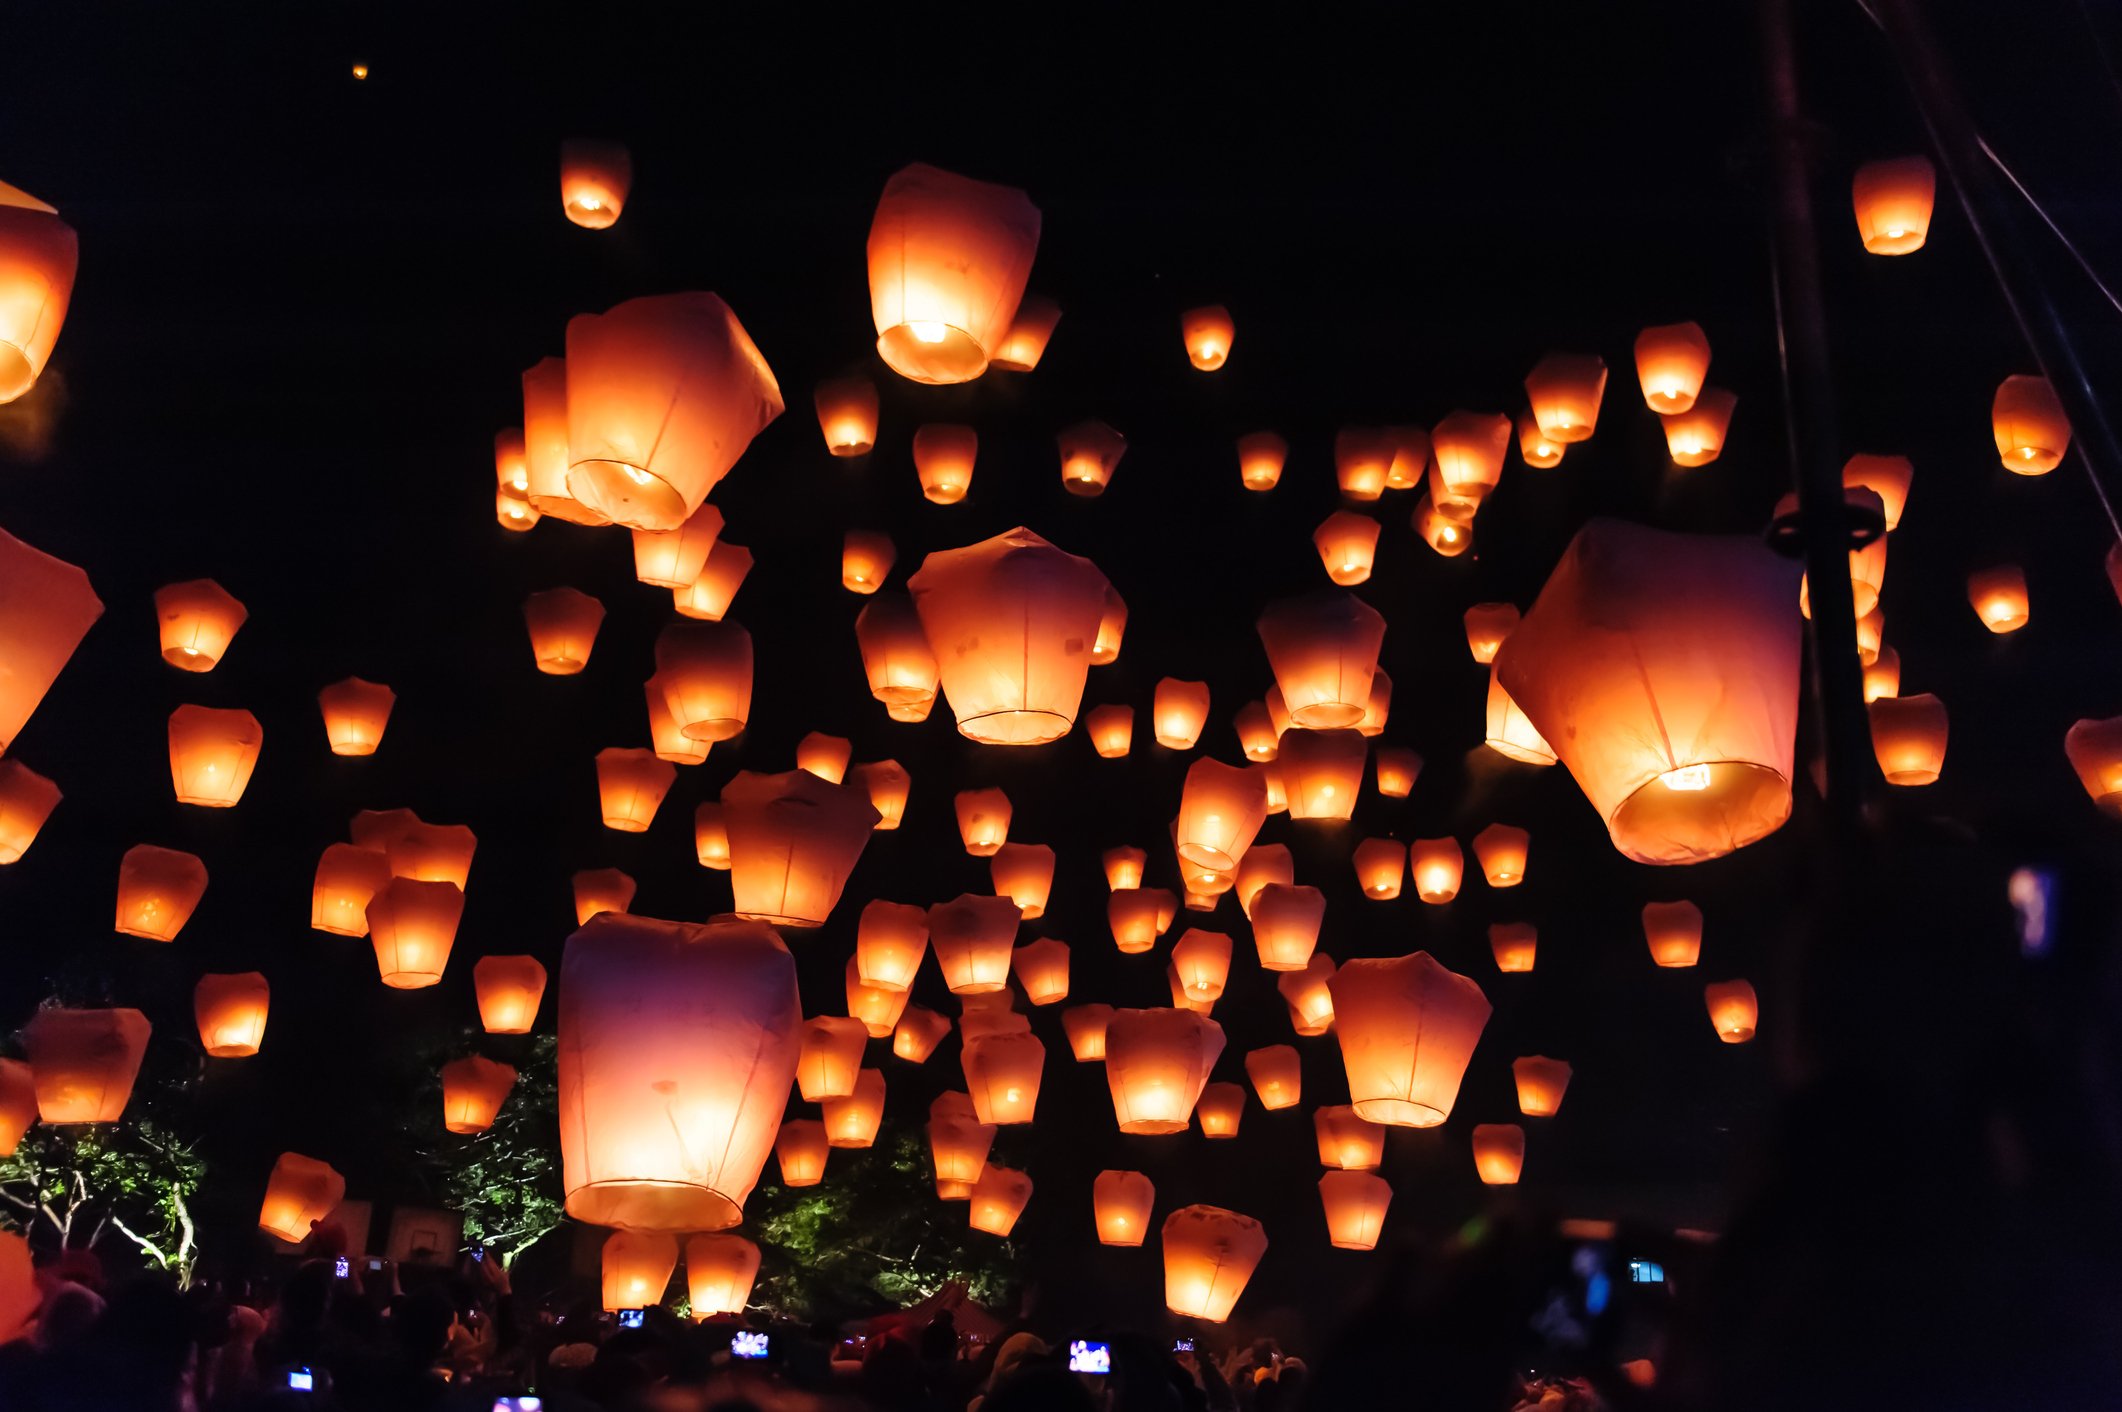 Lantern festival in Taiwan